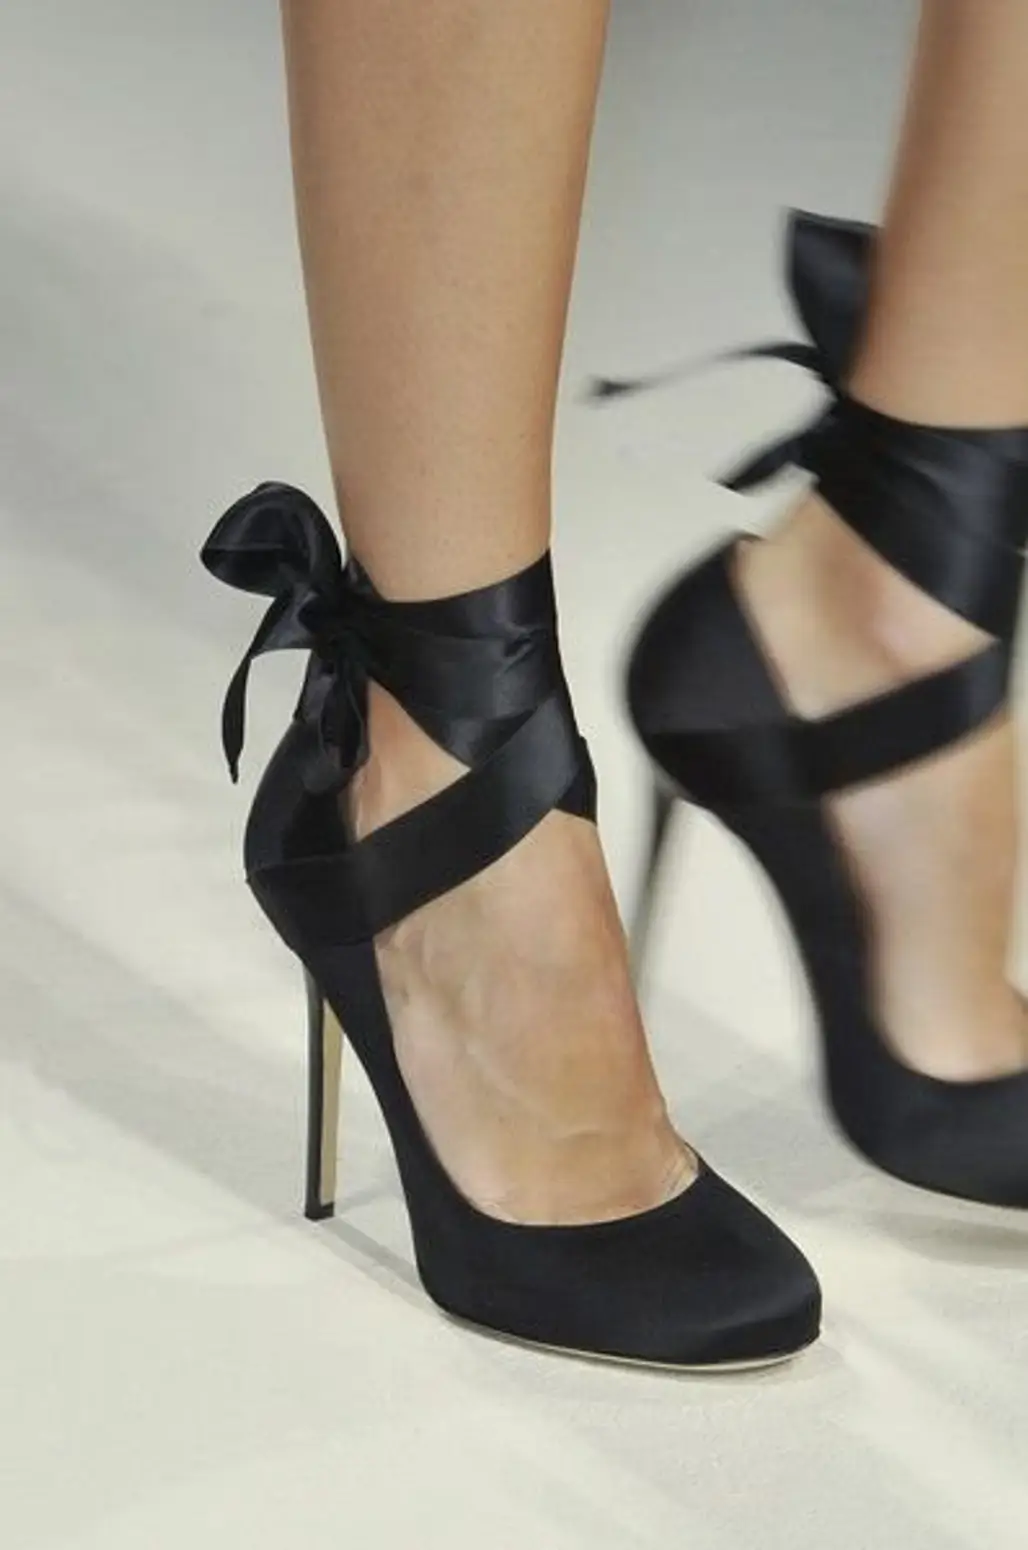 high heeled footwear,footwear,shoe,leg,spring,